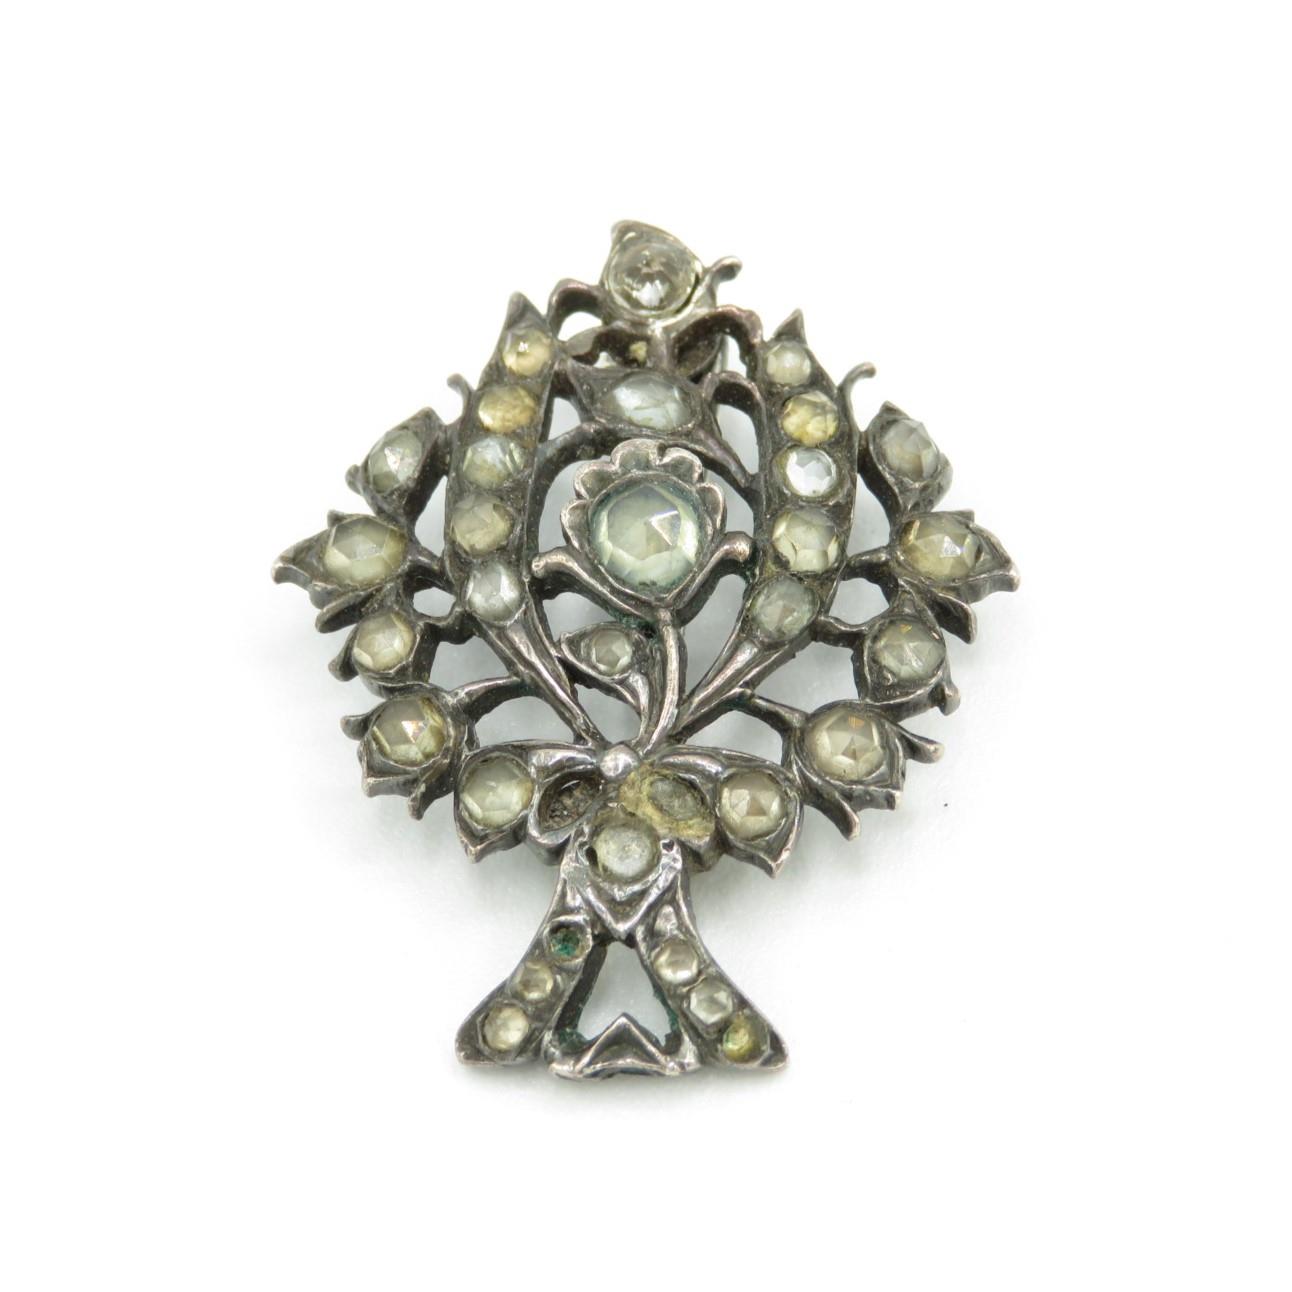 Silver 19th century Iberian old cut gemstone brooch (7g)